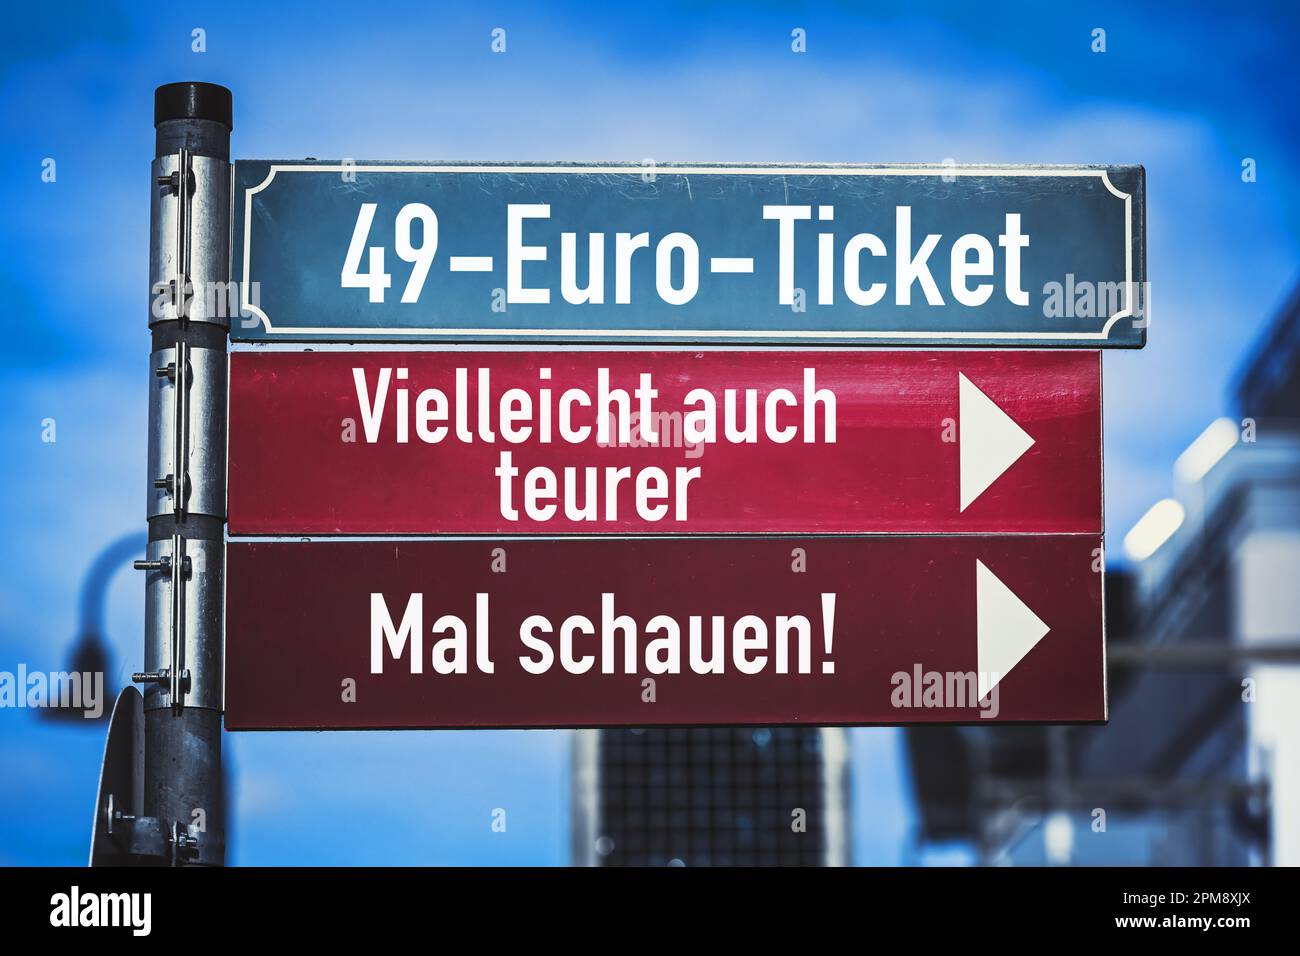 FOTOMONTAGE, Wegweiser mit Aufschrift 49-Euro-Ticket, Vielleicht auch teurer und Mal schauen, Symbolfoto Kosten für das D-Ticket Foto Stock